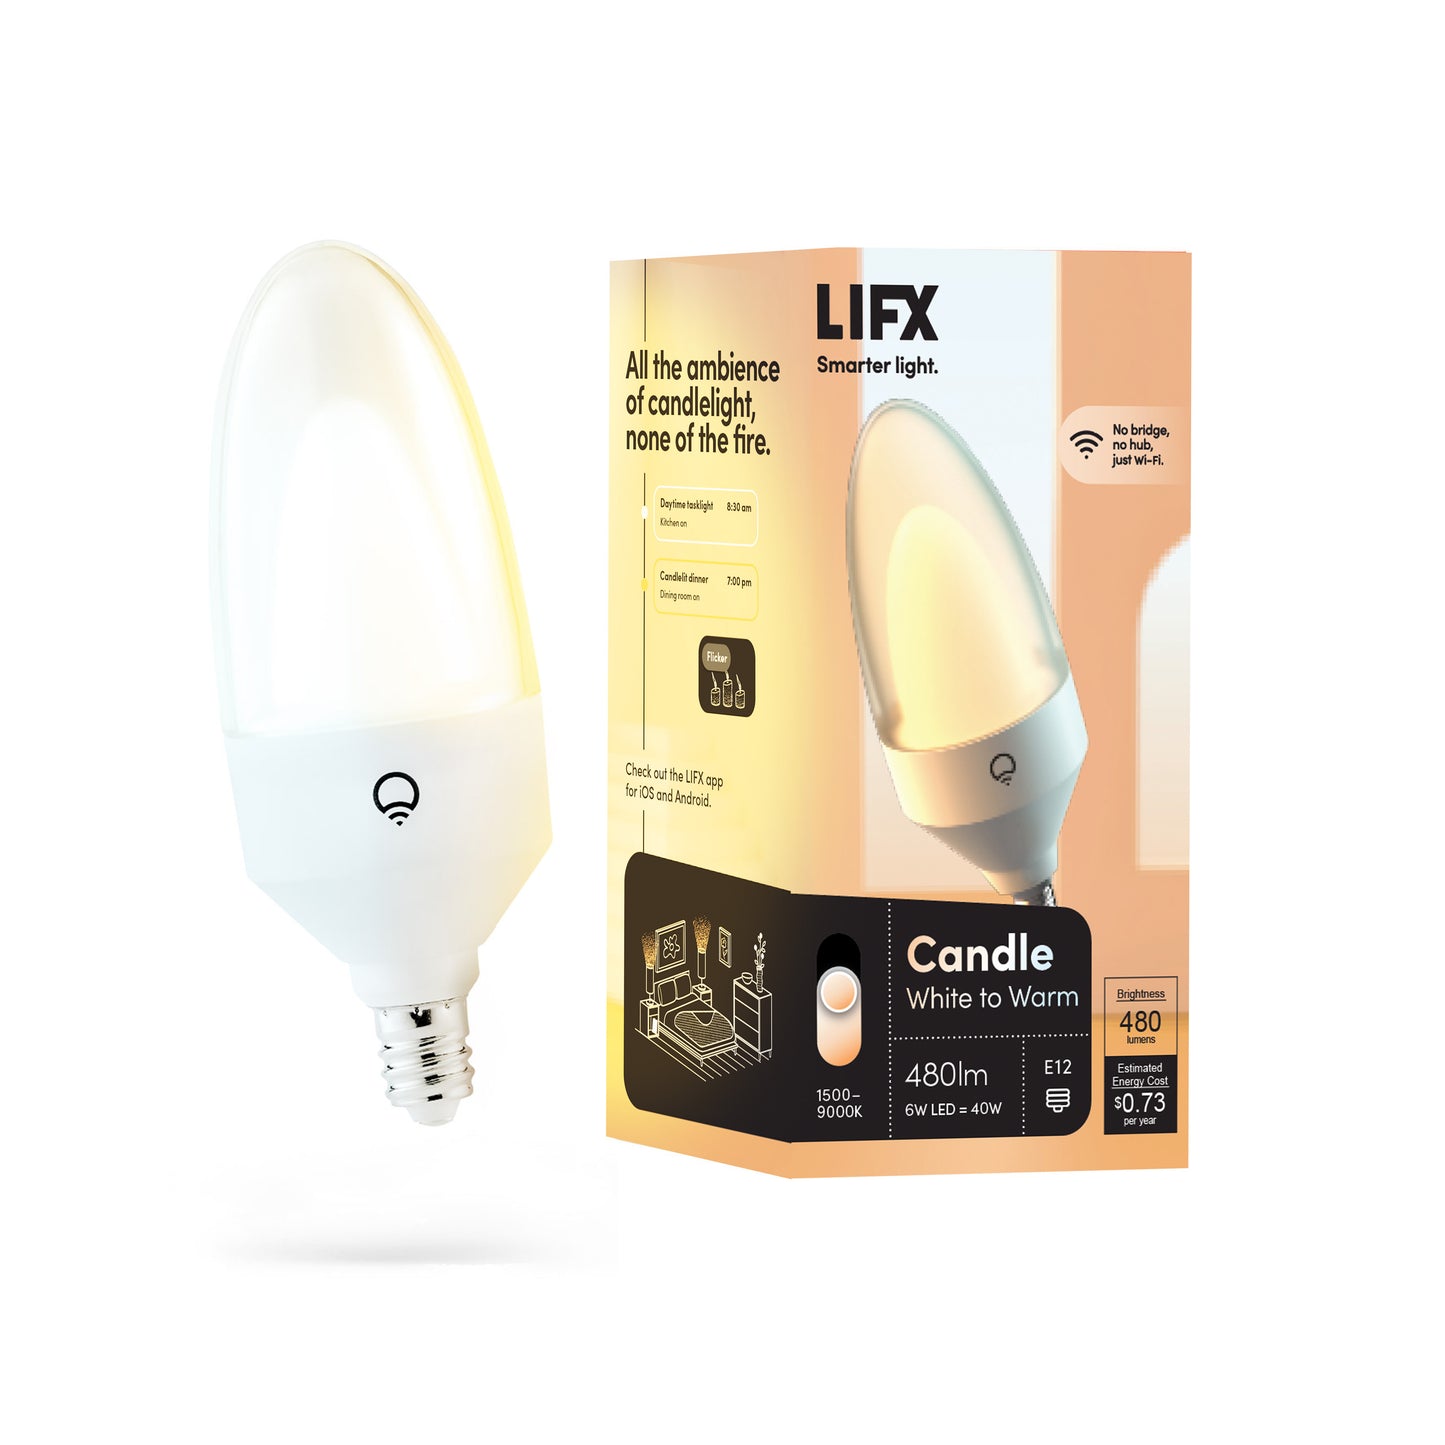 LIFX Candle White to Warm E12